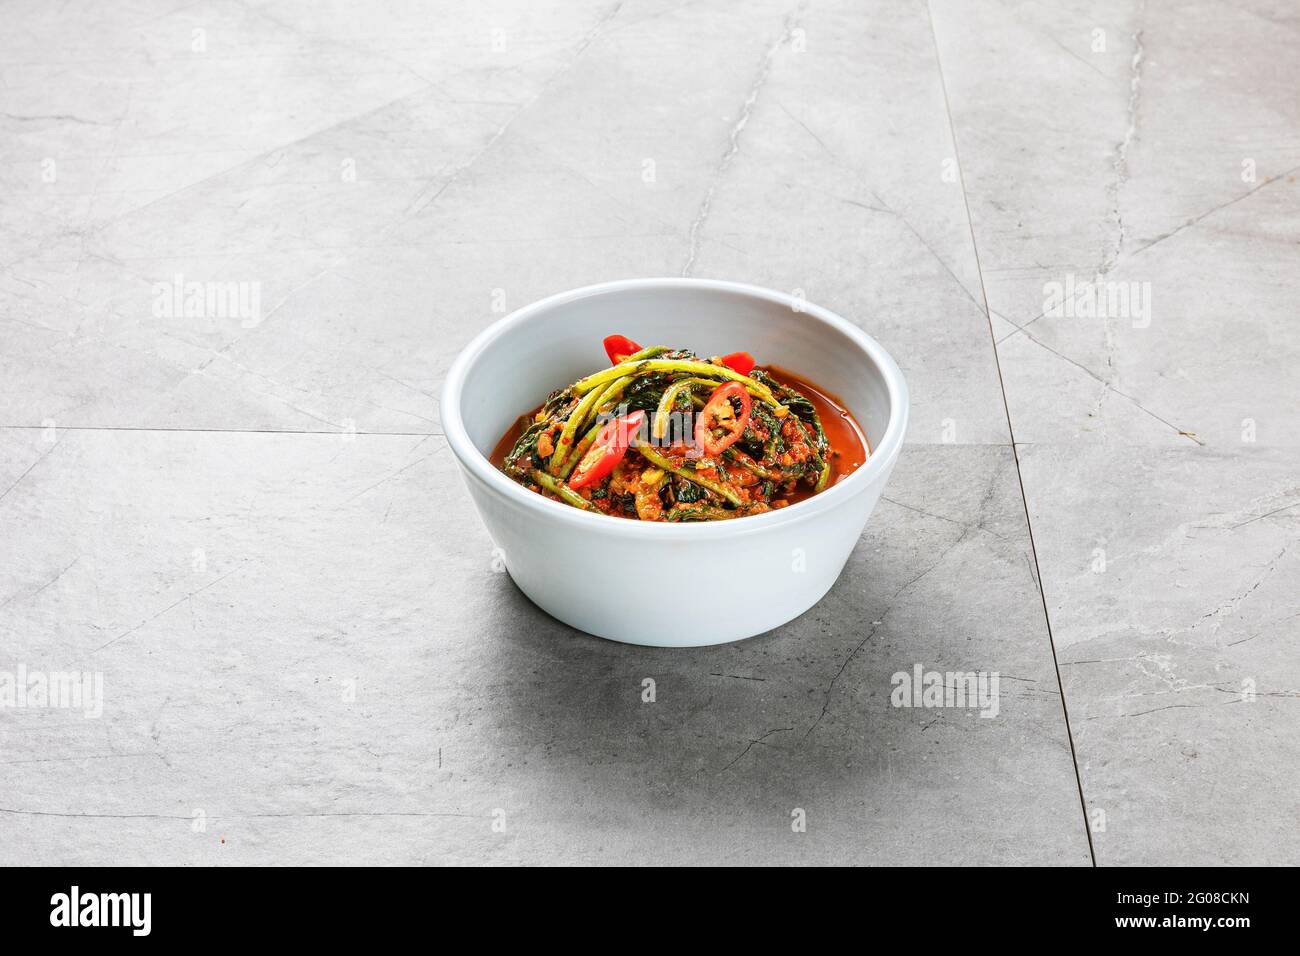 Kimchi dans un plat sur fond gris Banque D'Images